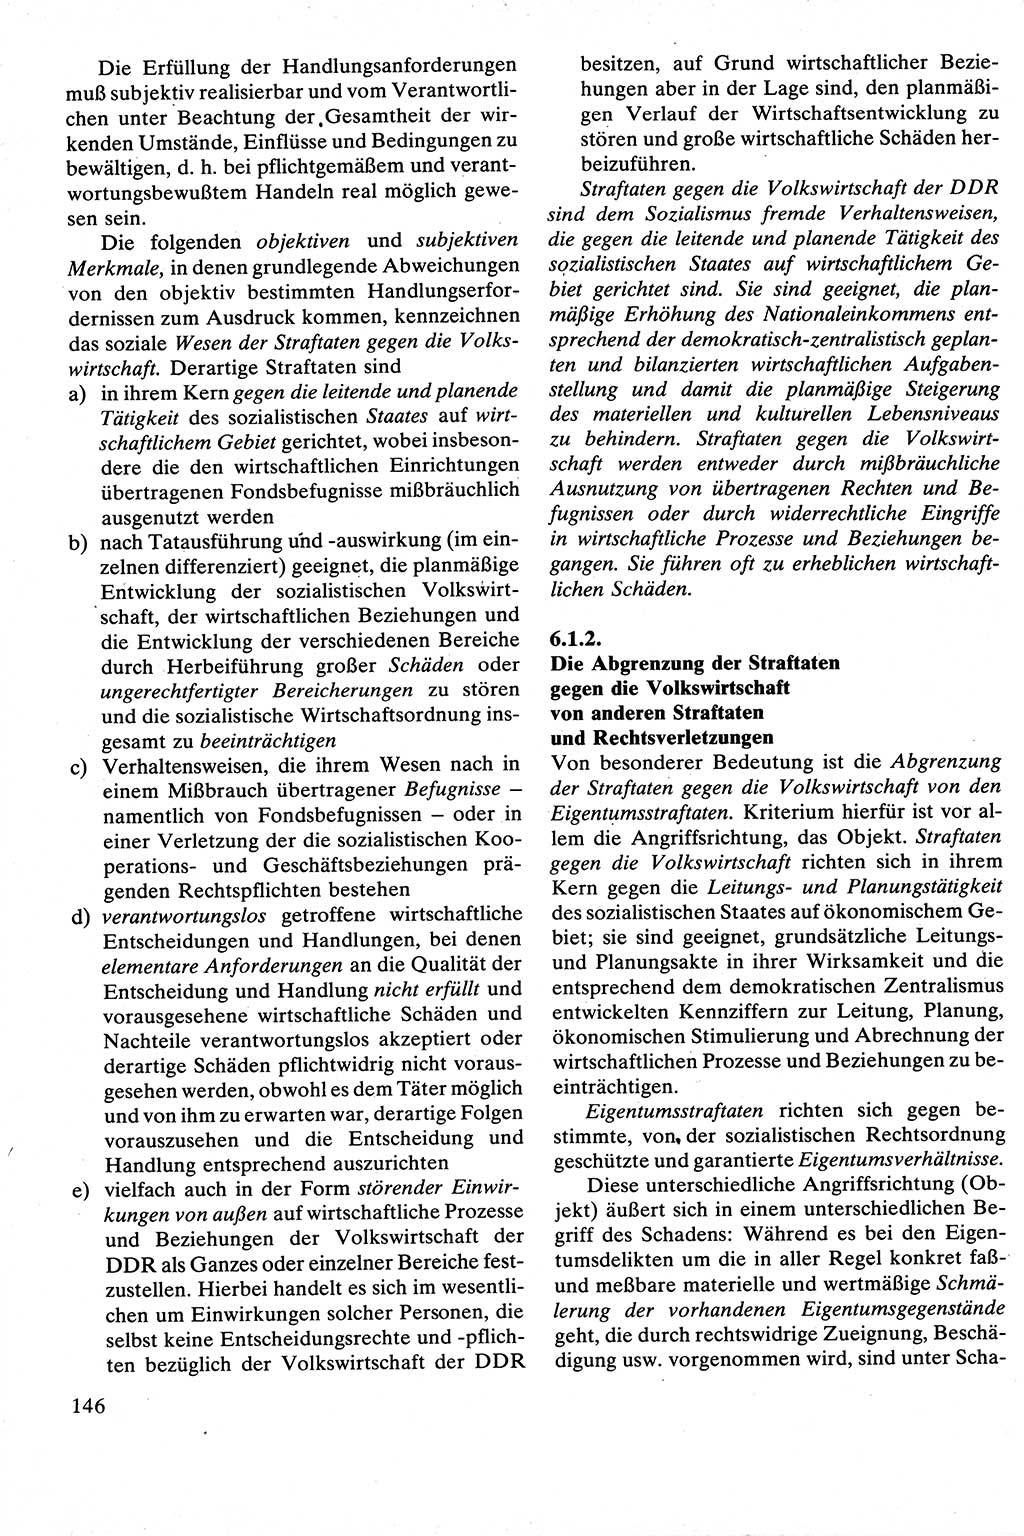 Strafrecht [Deutsche Demokratische Republik (DDR)], Besonderer Teil, Lehrbuch 1981, Seite 146 (Strafr. DDR BT Lb. 1981, S. 146)